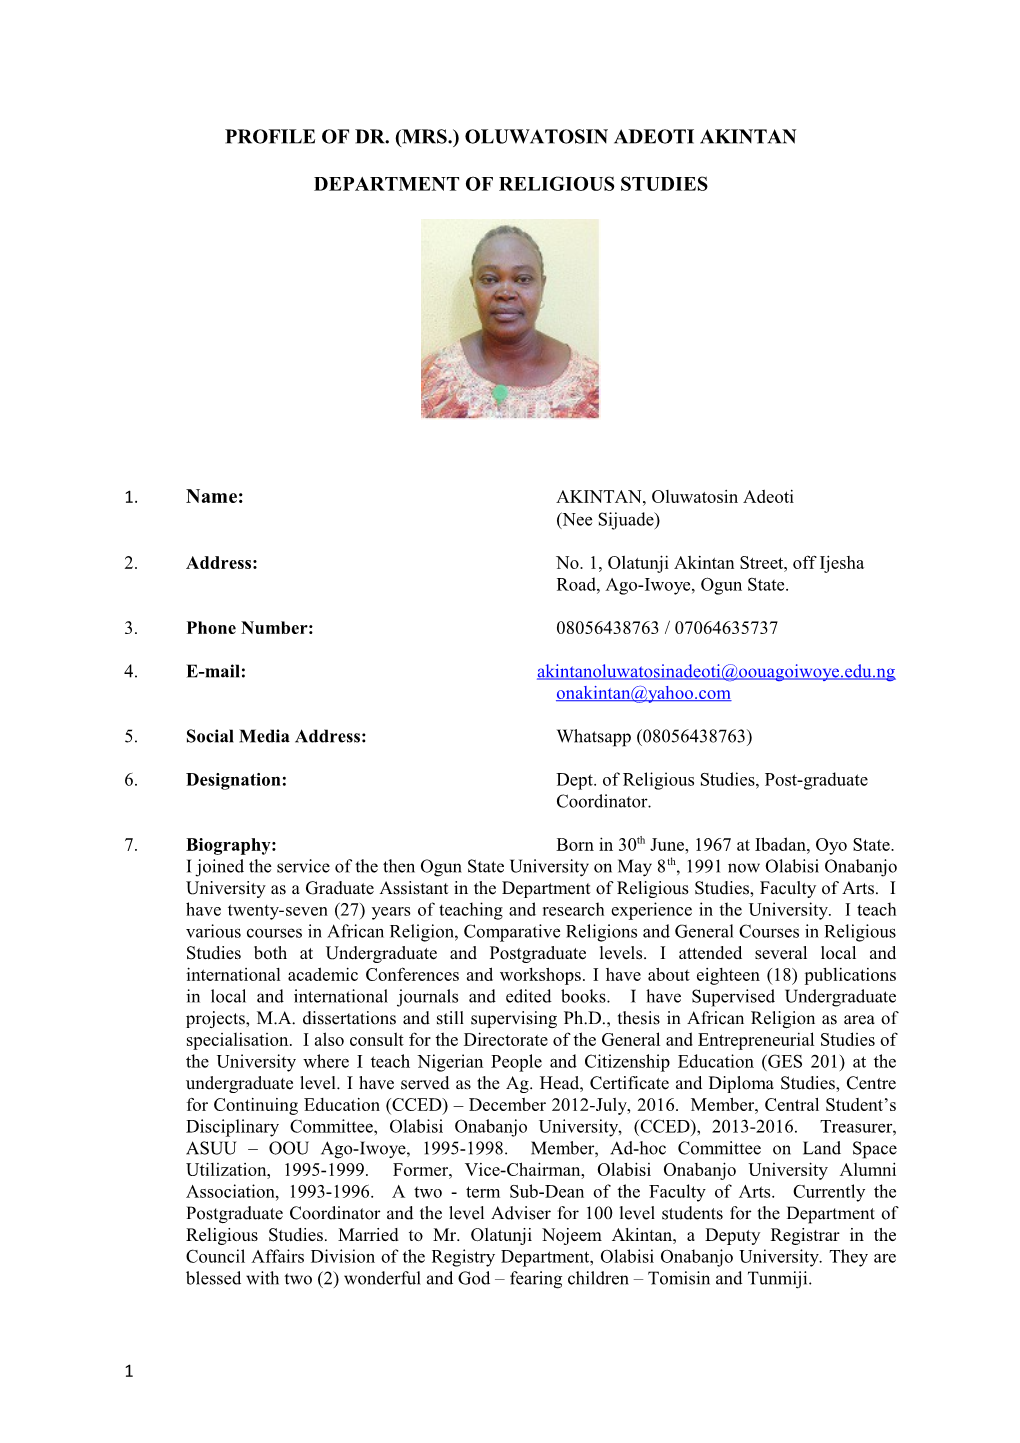 Profile of Dr. (Mrs.) Oluwatosin Adeoti Akintan